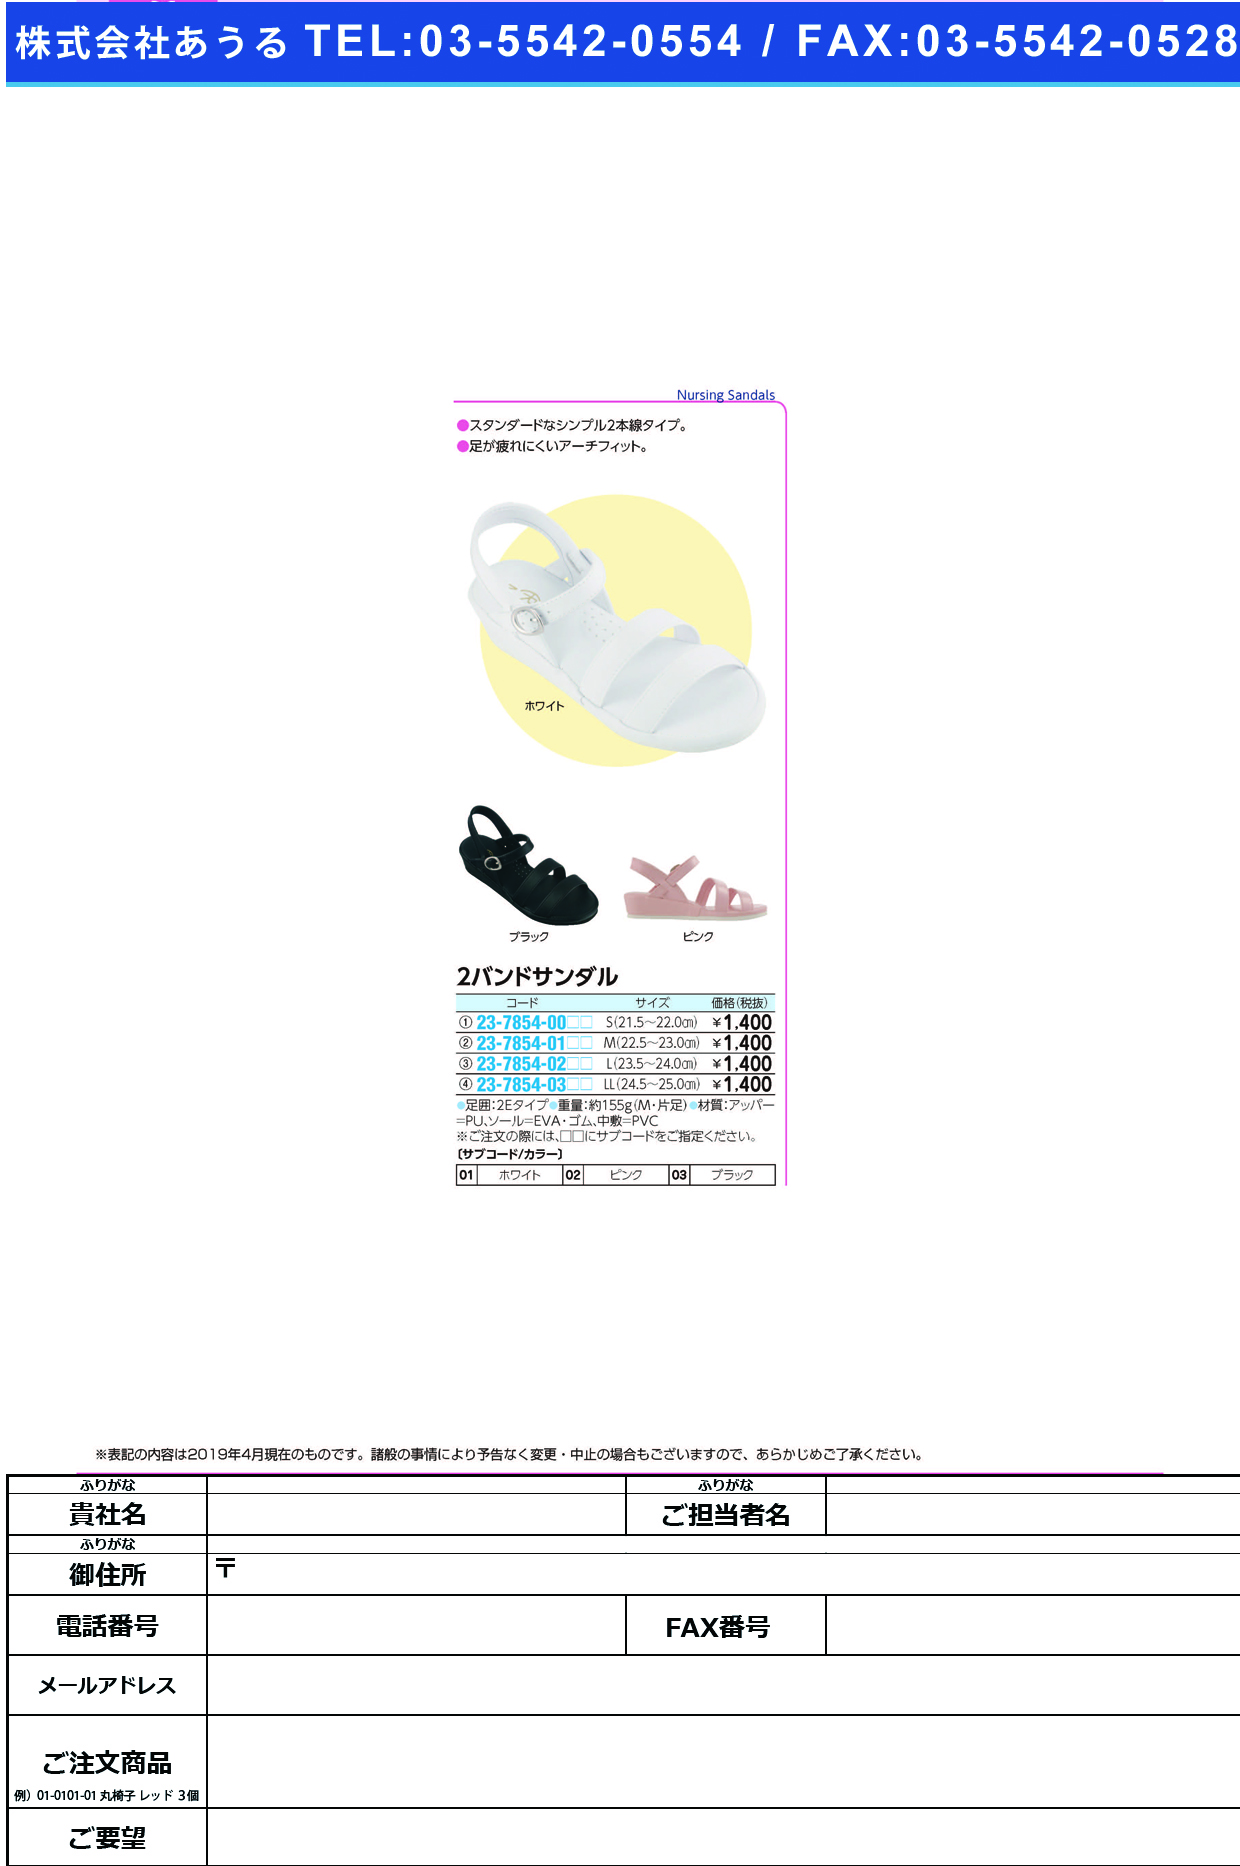 (23-7854-01)２バンドサンダル M(22.5-23.0CM) ﾂｰﾊﾞﾝﾄﾞｻﾝﾀﾞﾙ ピンク(ファーストレイト)【1足単位】【2019年カタログ商品】